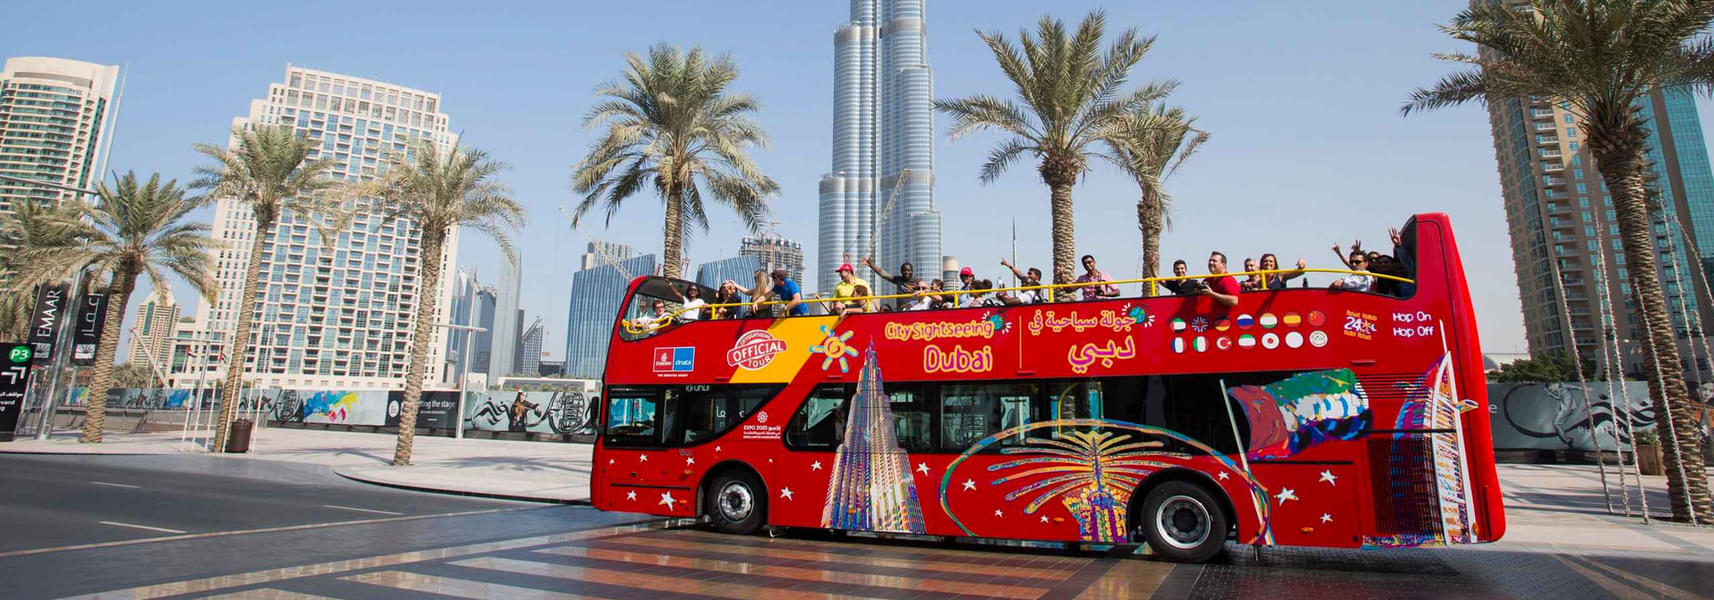 Dubai Hop On Hop Off Bus Tour Image